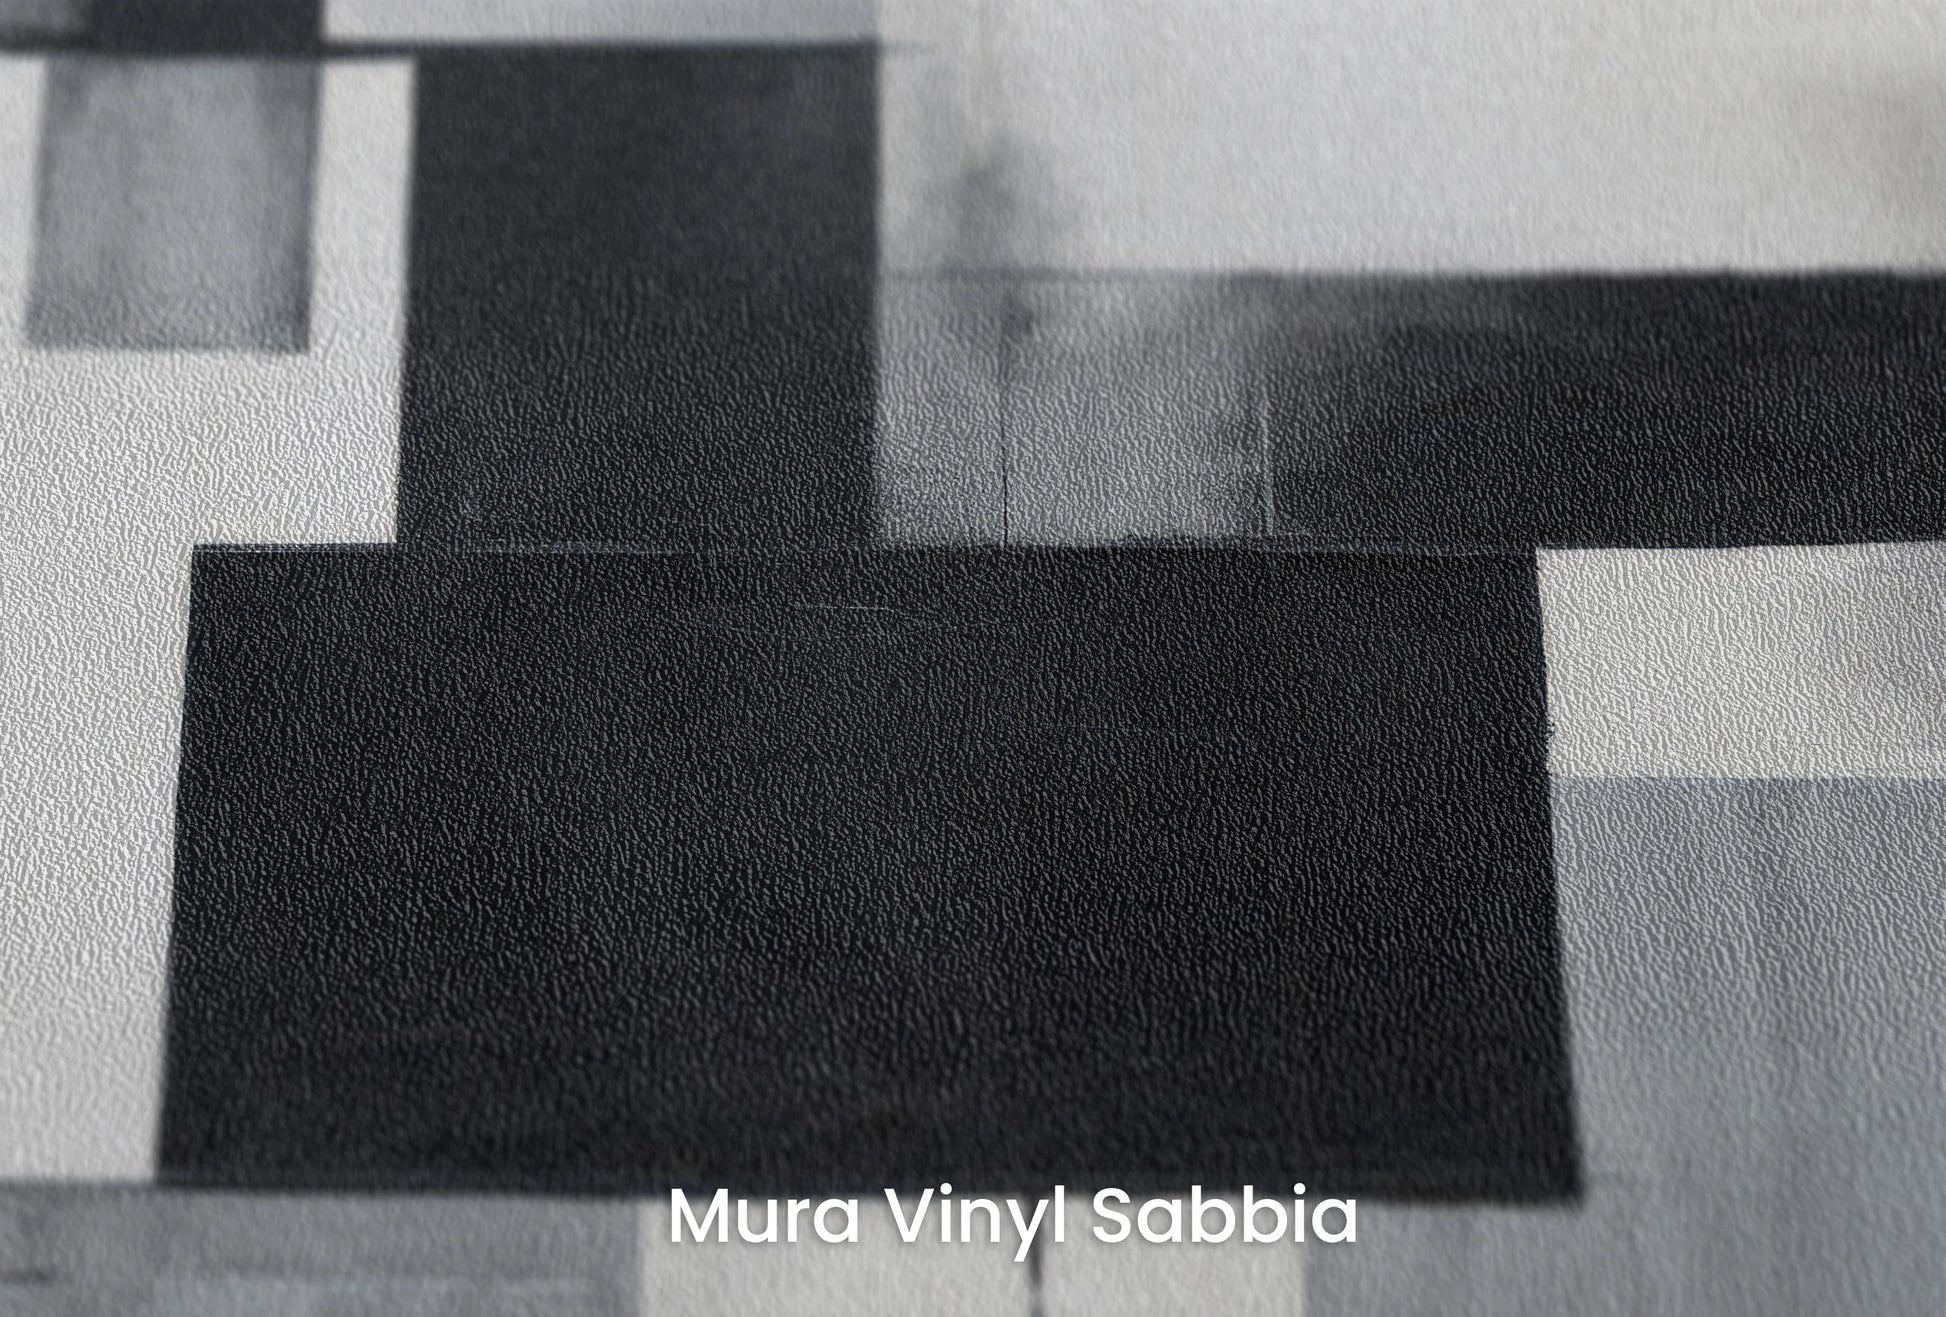 Zbliżenie na artystyczną fototapetę o nazwie Monochrome Harmony na podłożu Mura Vinyl Sabbia struktura grubego ziarna piasku.